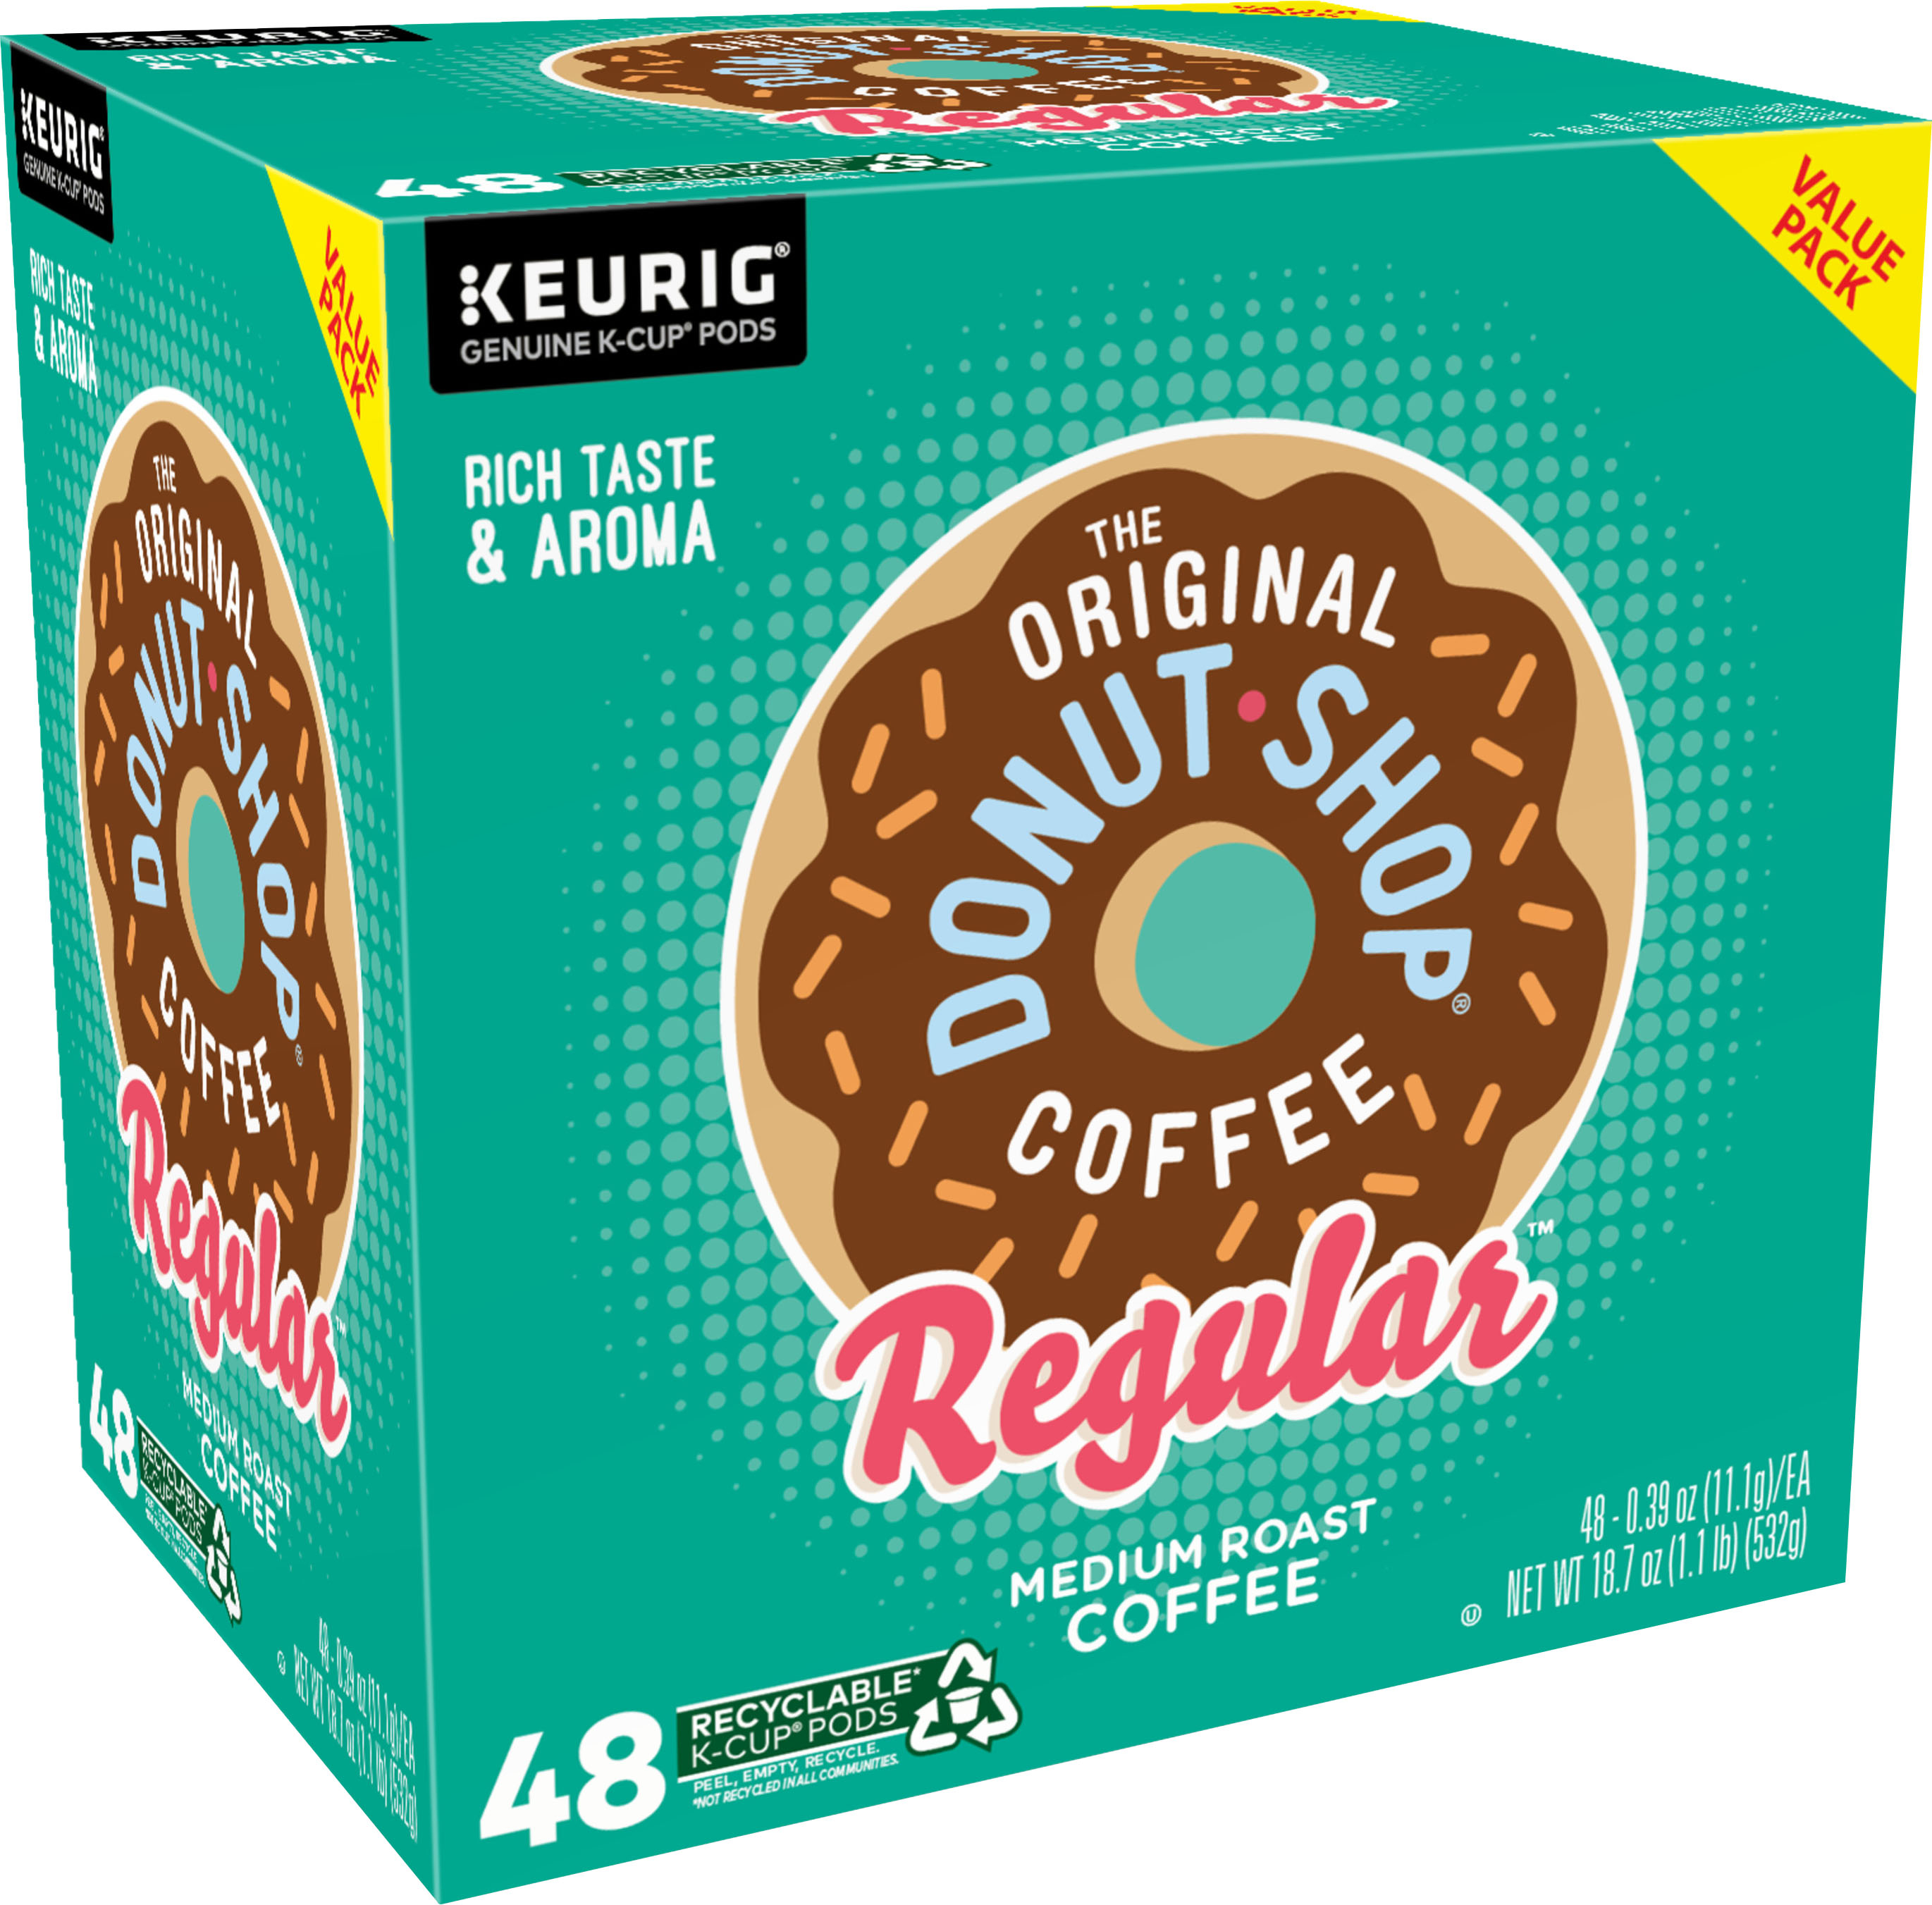 The Original Donut Shop Regular K-Cup Pods (48-Pack) 5000356558 - Best Buy